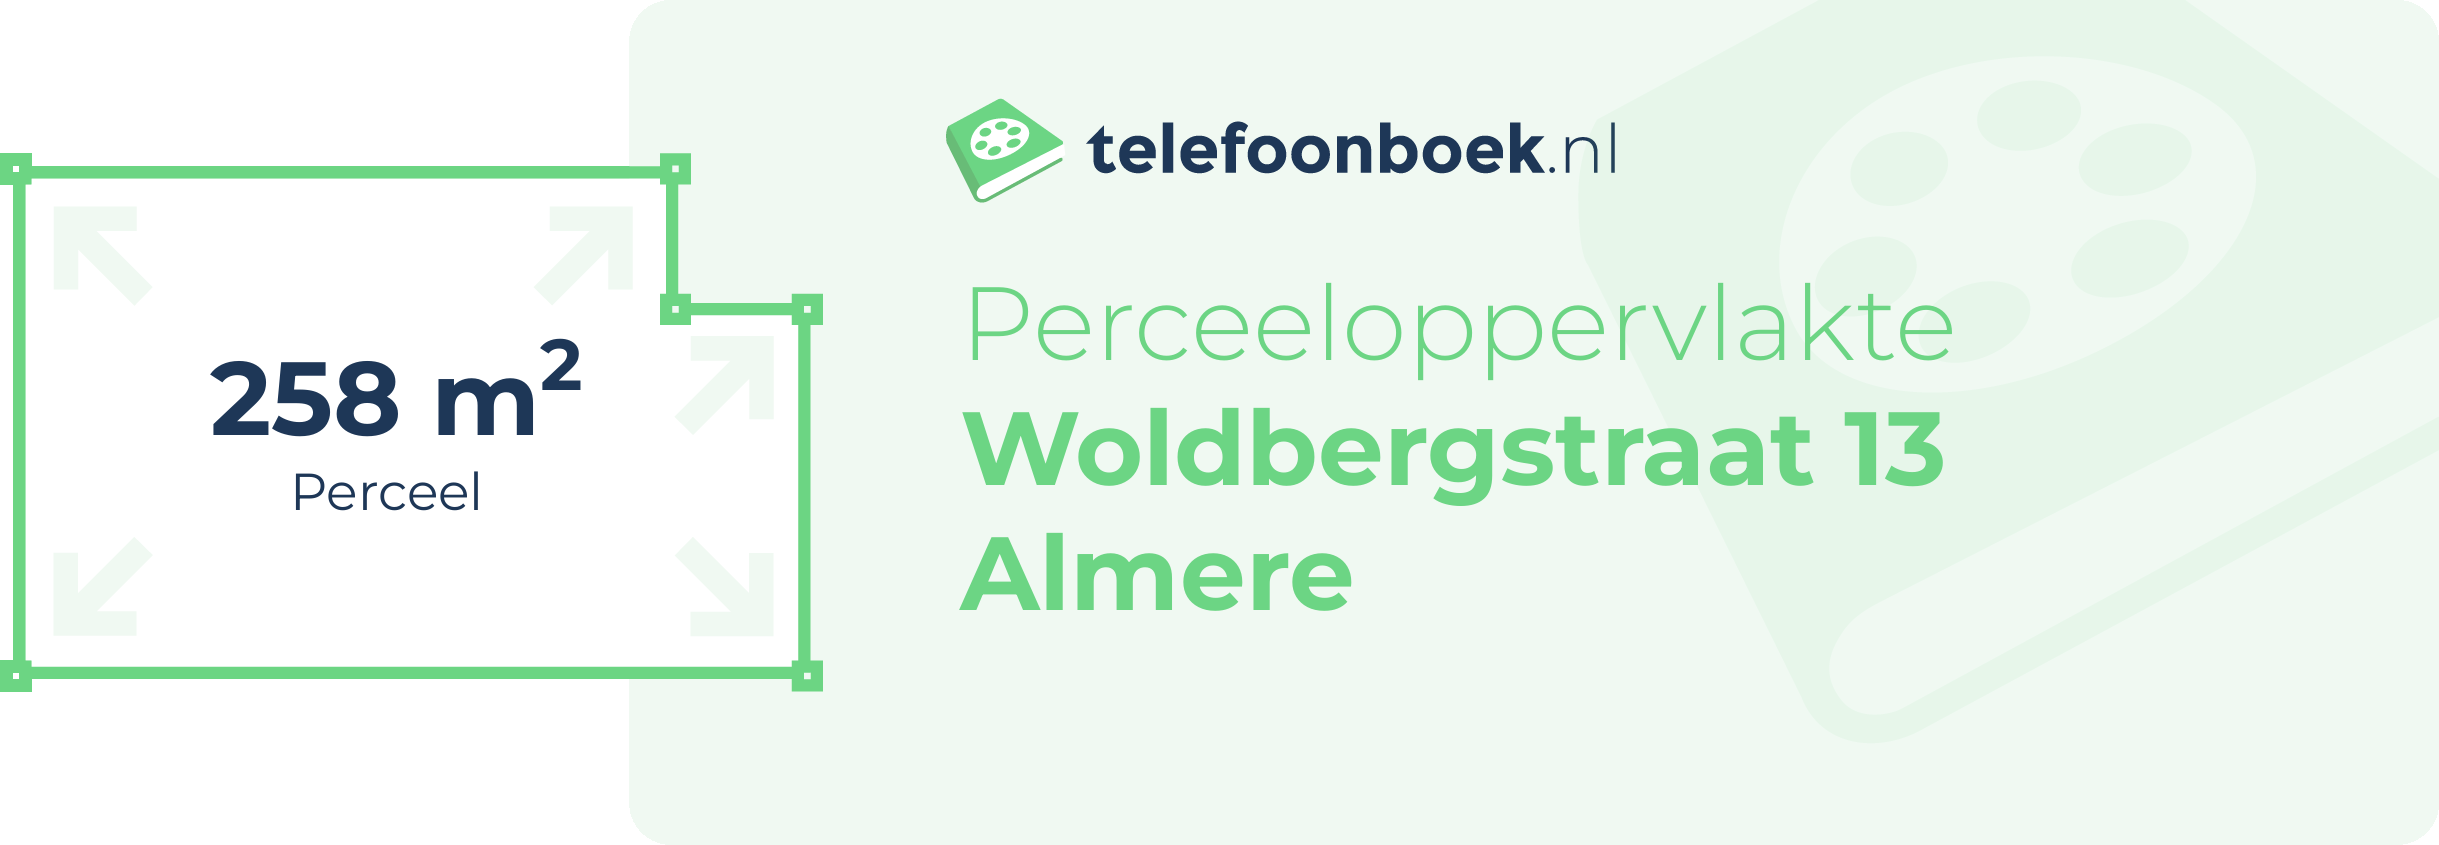 Perceeloppervlakte Woldbergstraat 13 Almere